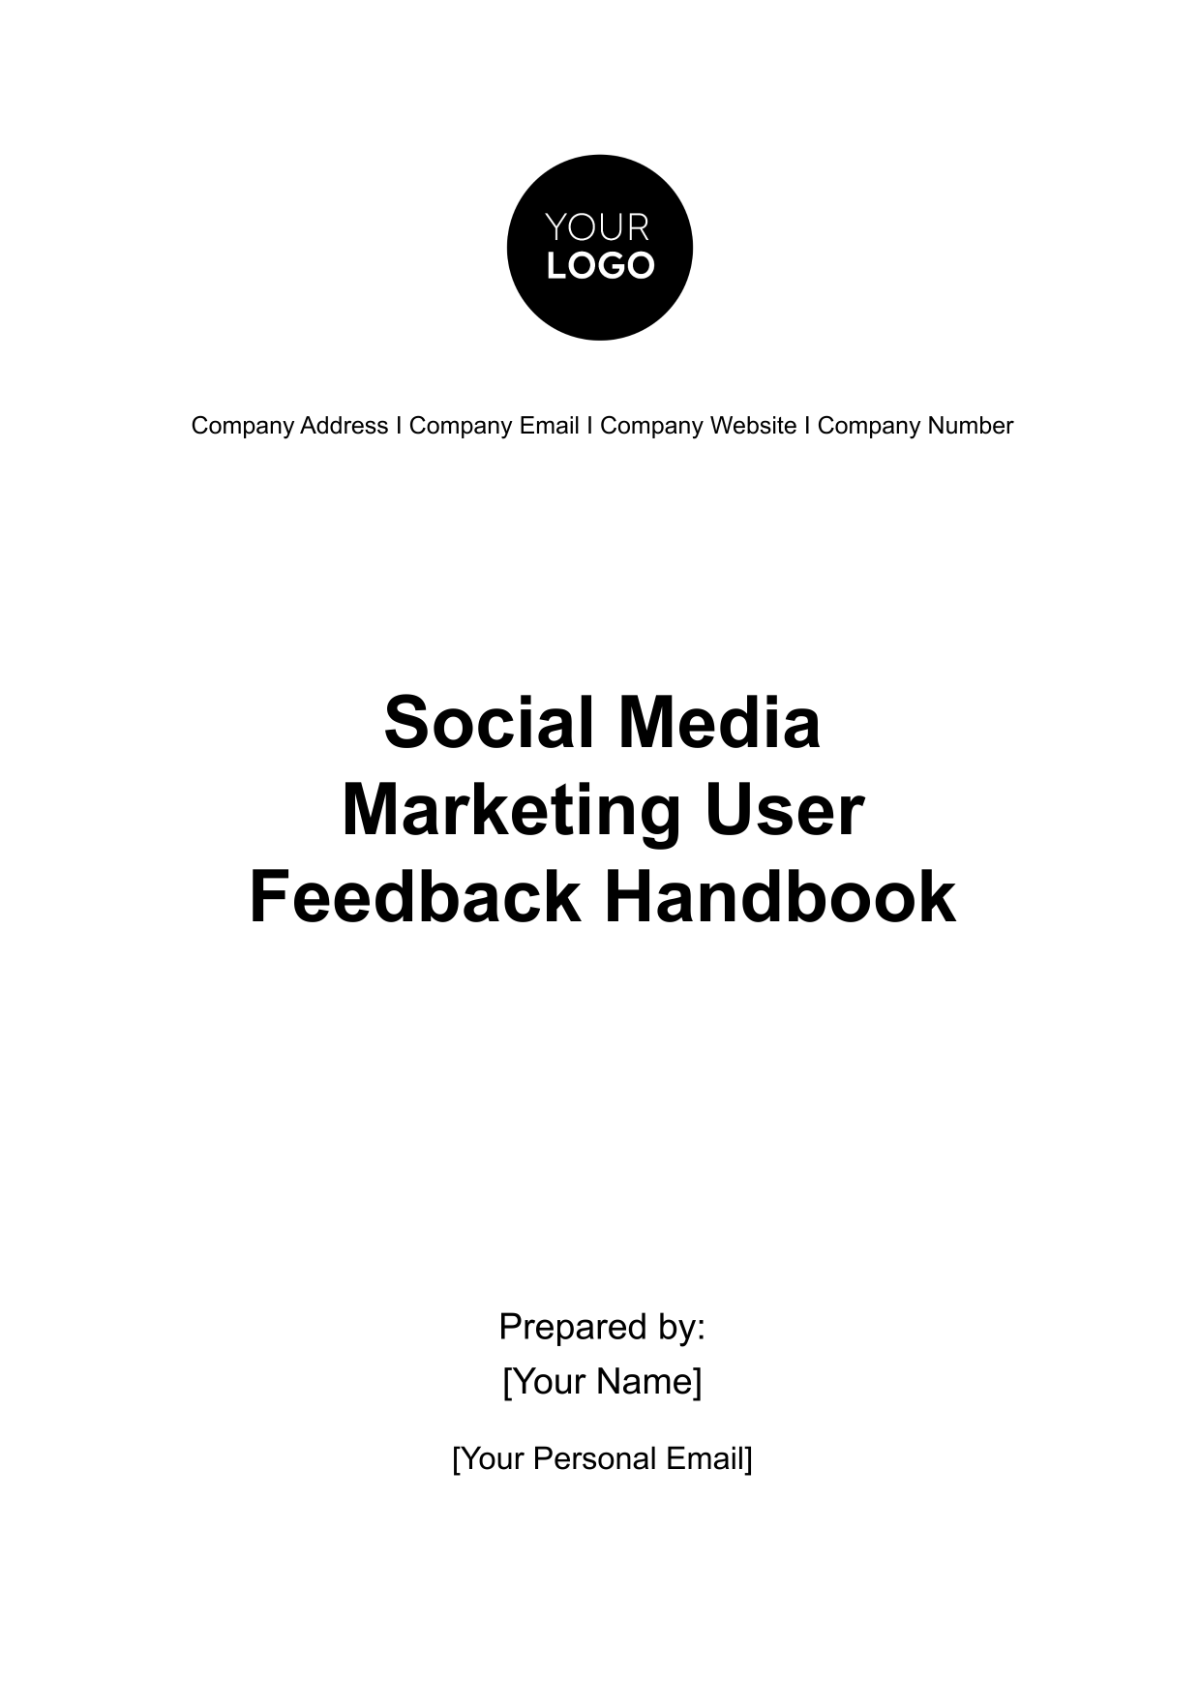 Social Media Marketing User Feedback Handbook Template